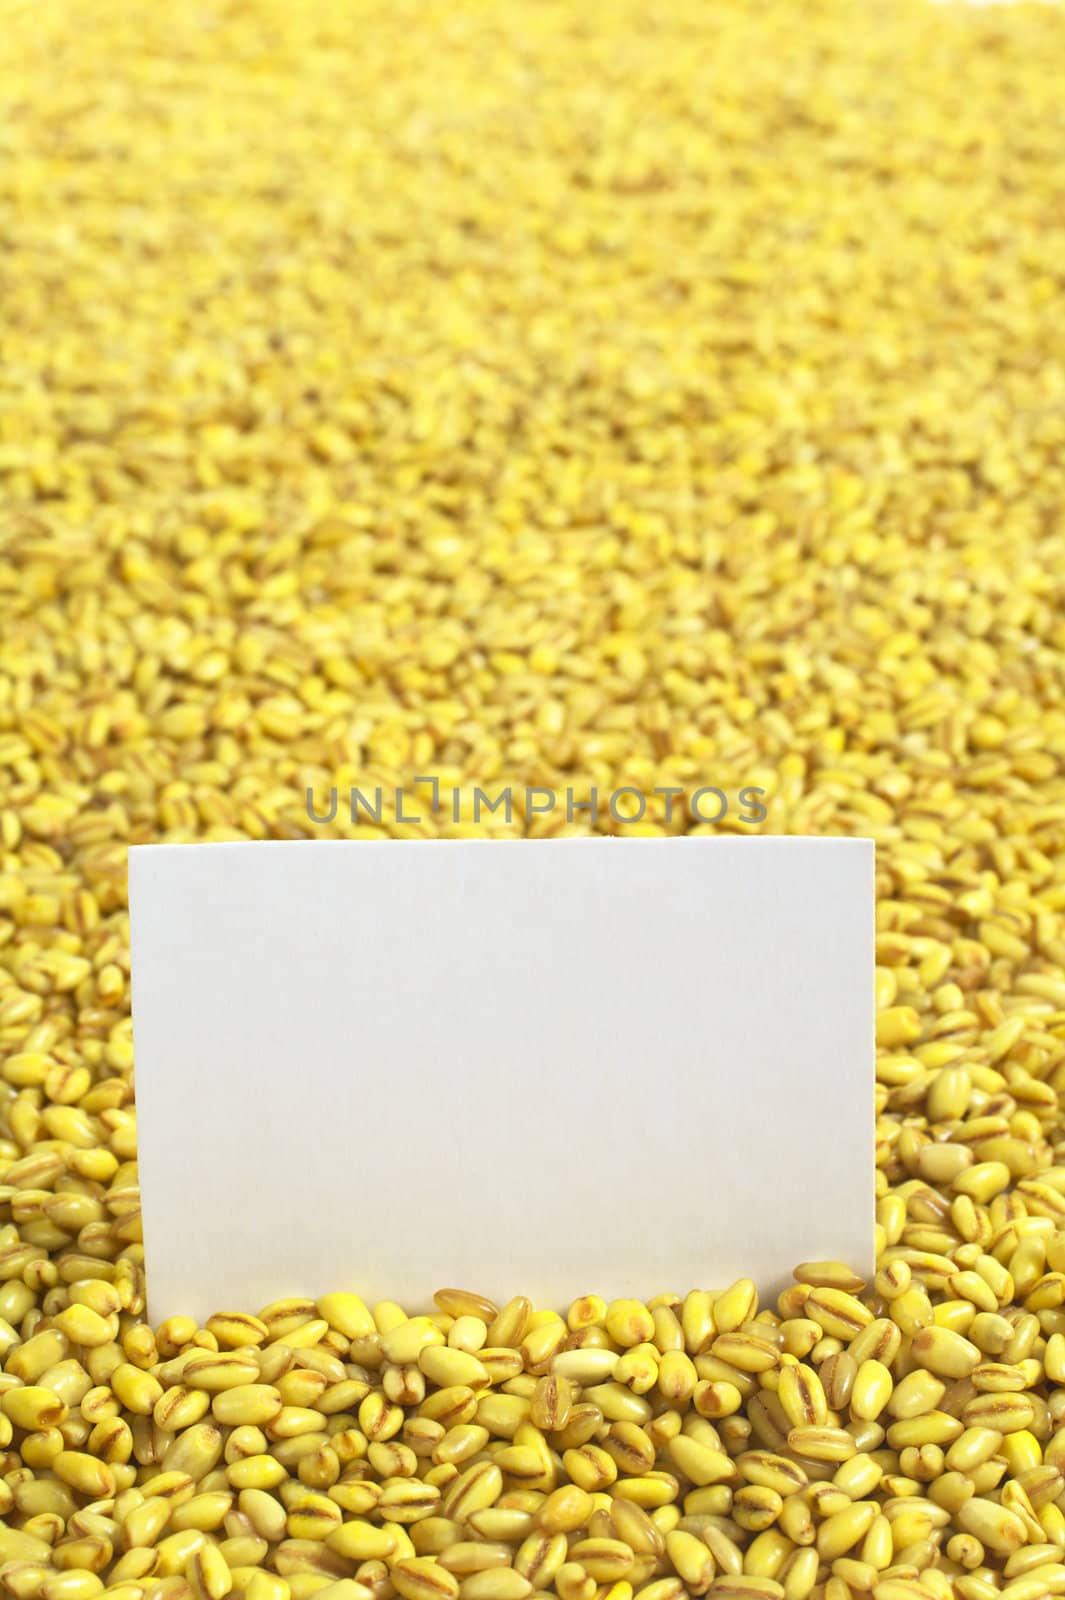 Raw Pearl Barley with Blank Card by ildi